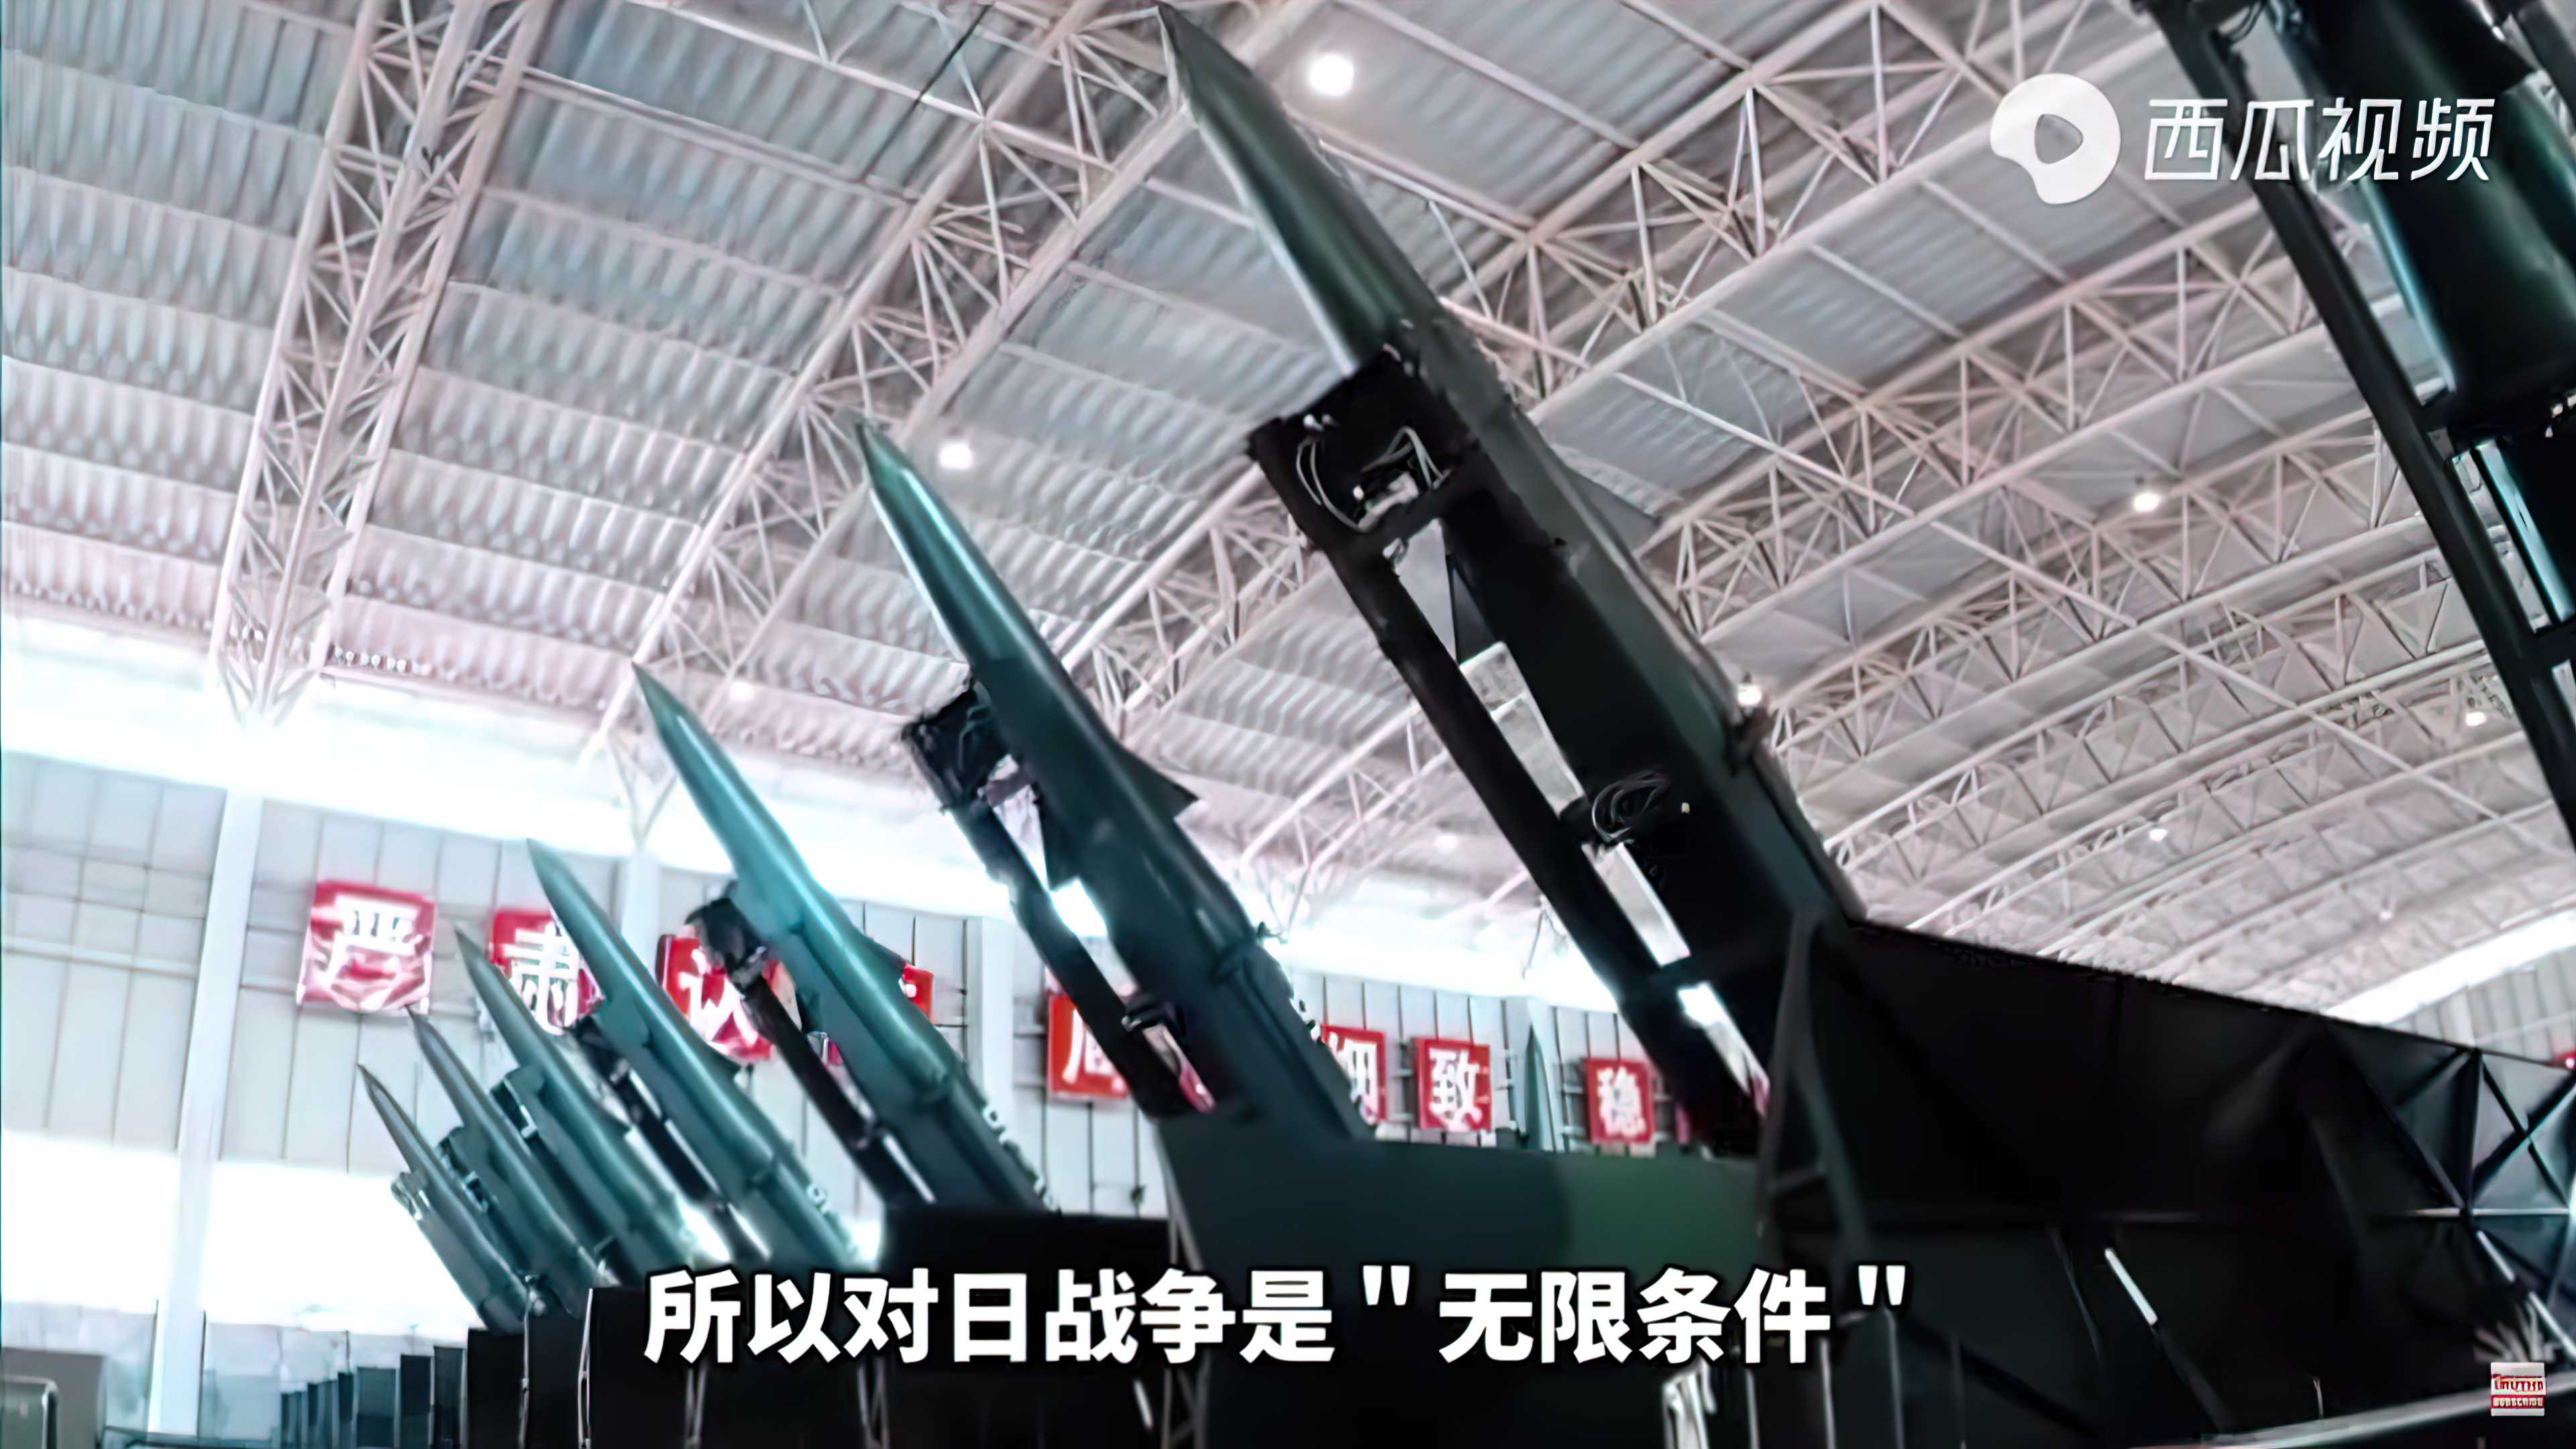 Скриншот из ролика о том, как Китай будет наносить ядерный удар по Японии